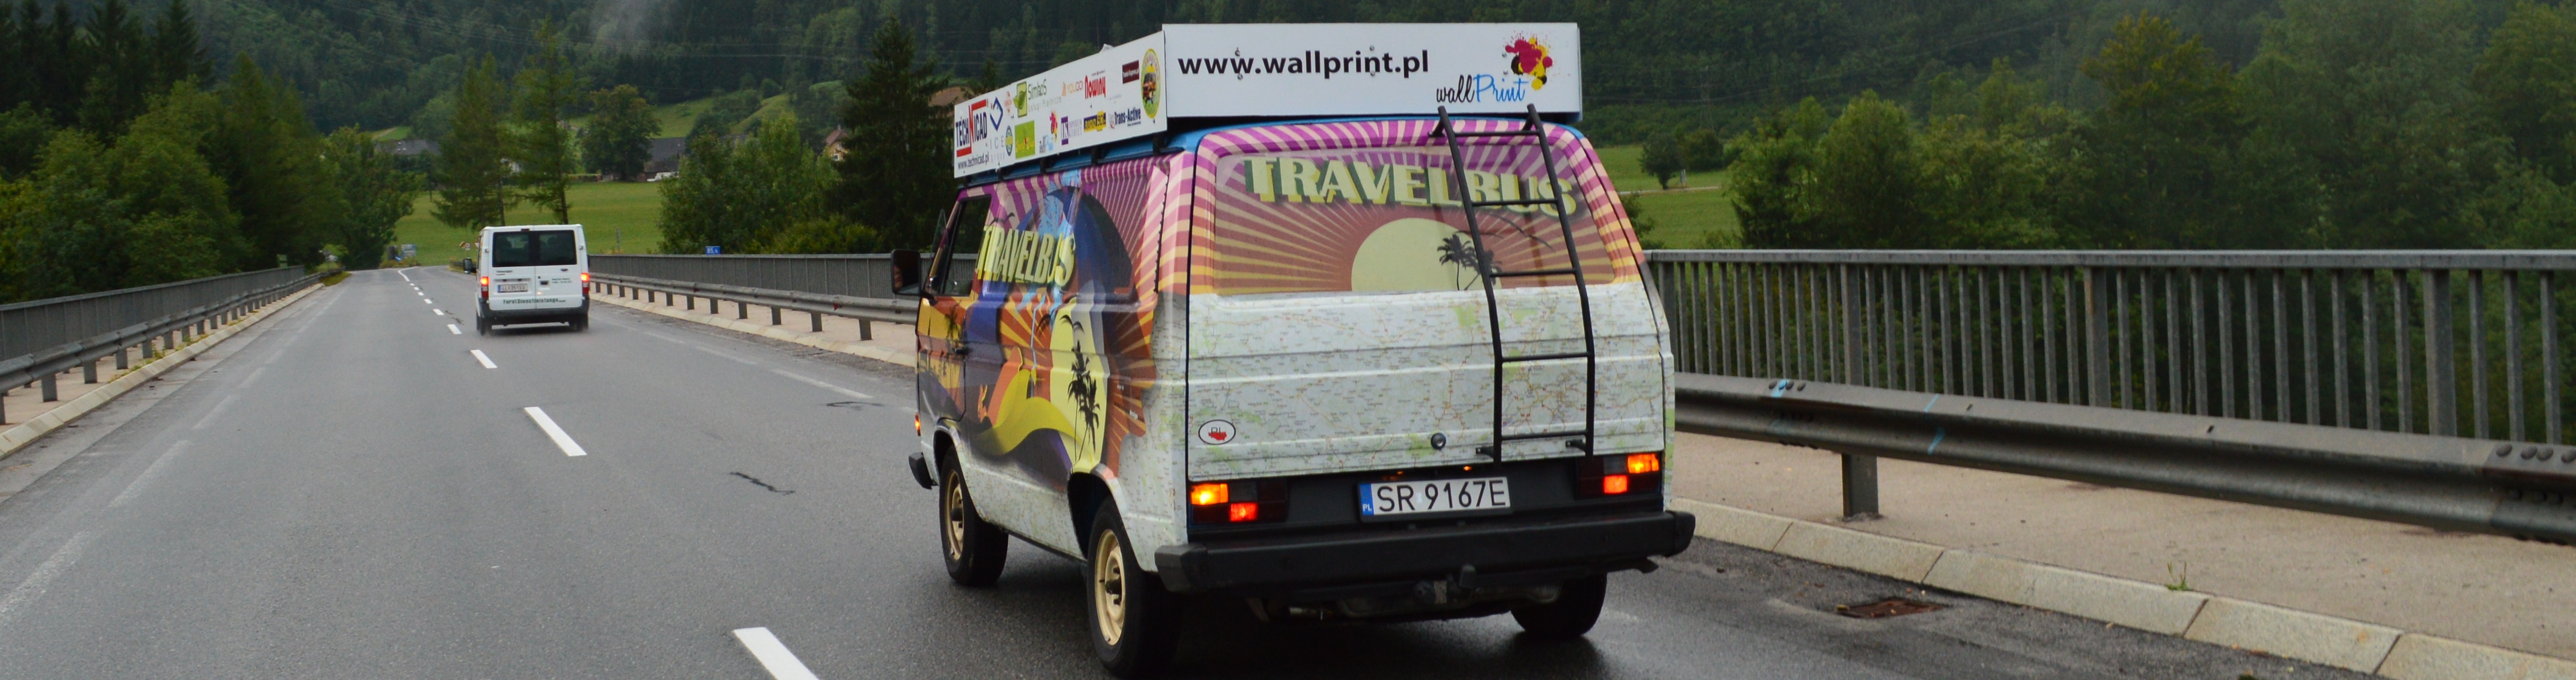 Travelbus - Austria